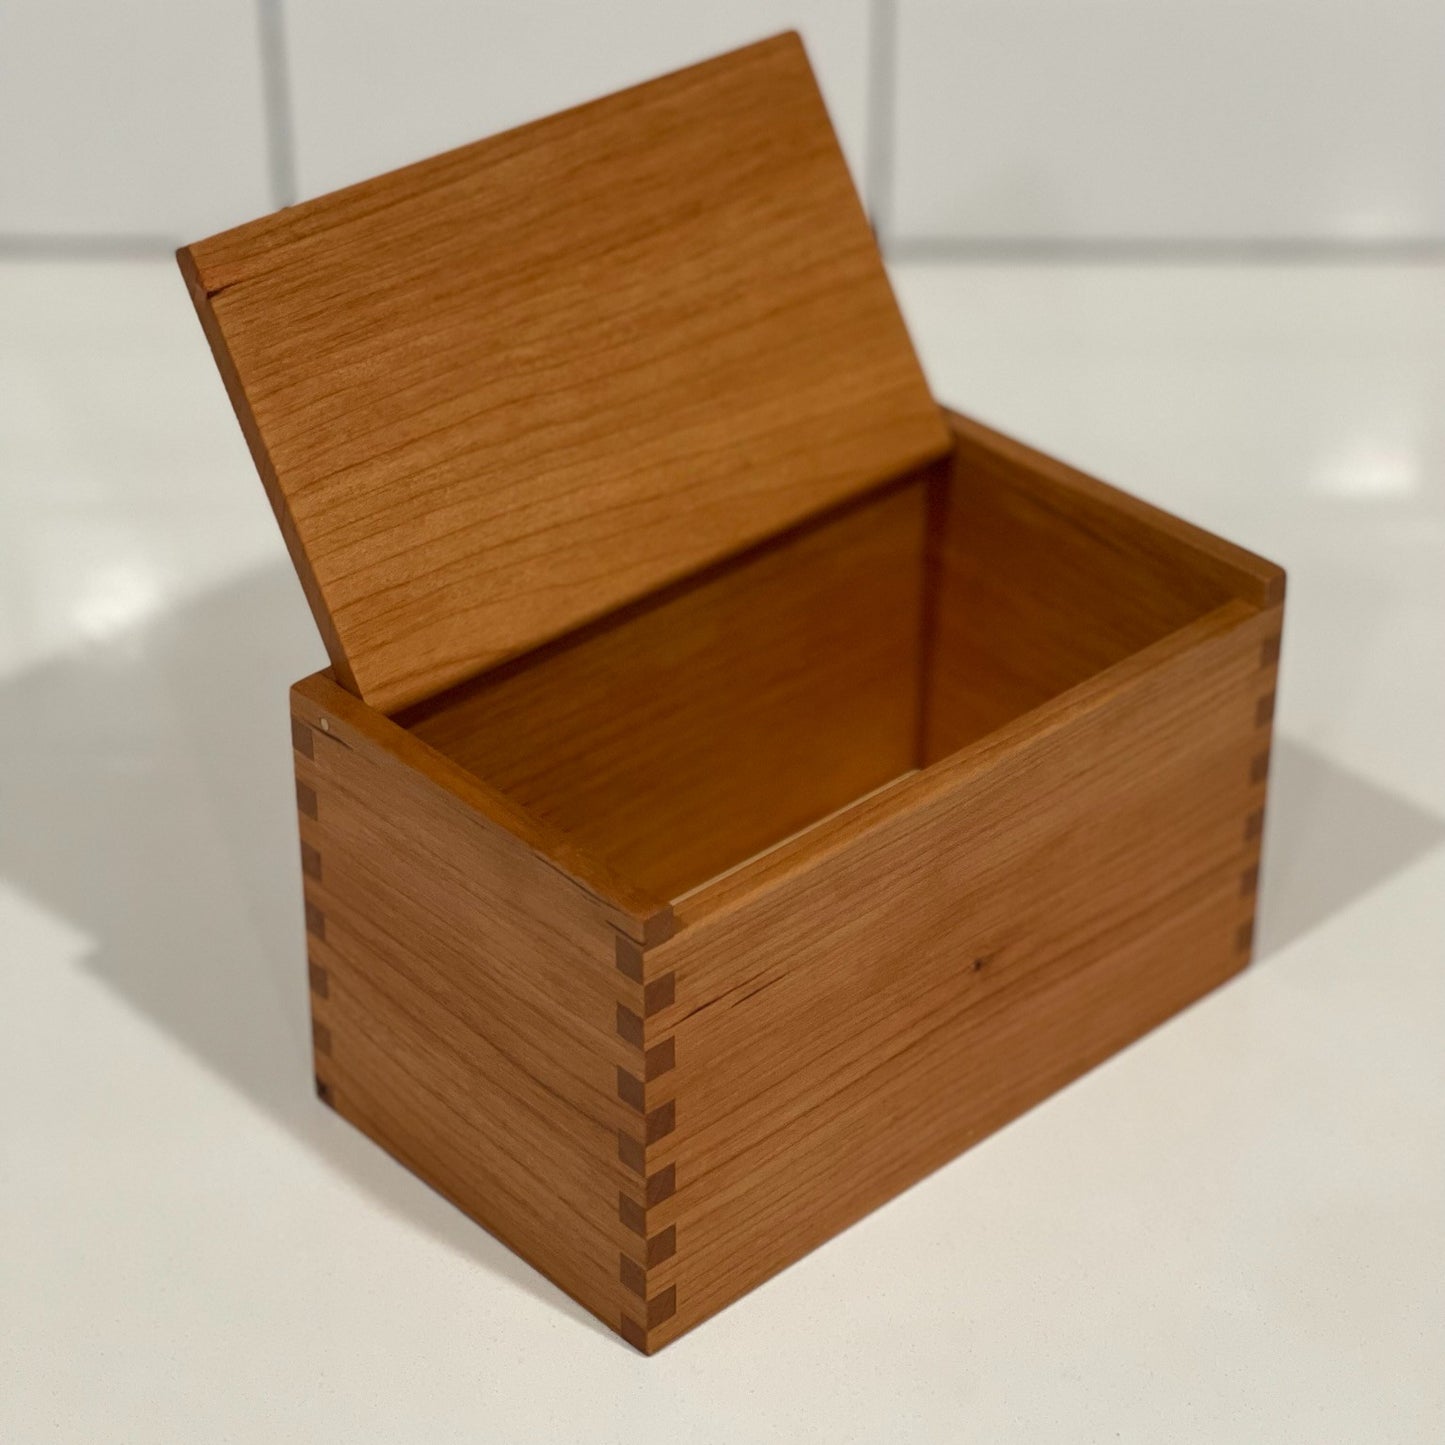 Wood Salt Cellar - Salt Box - Salt Pig - Keepsake Box - Cherry